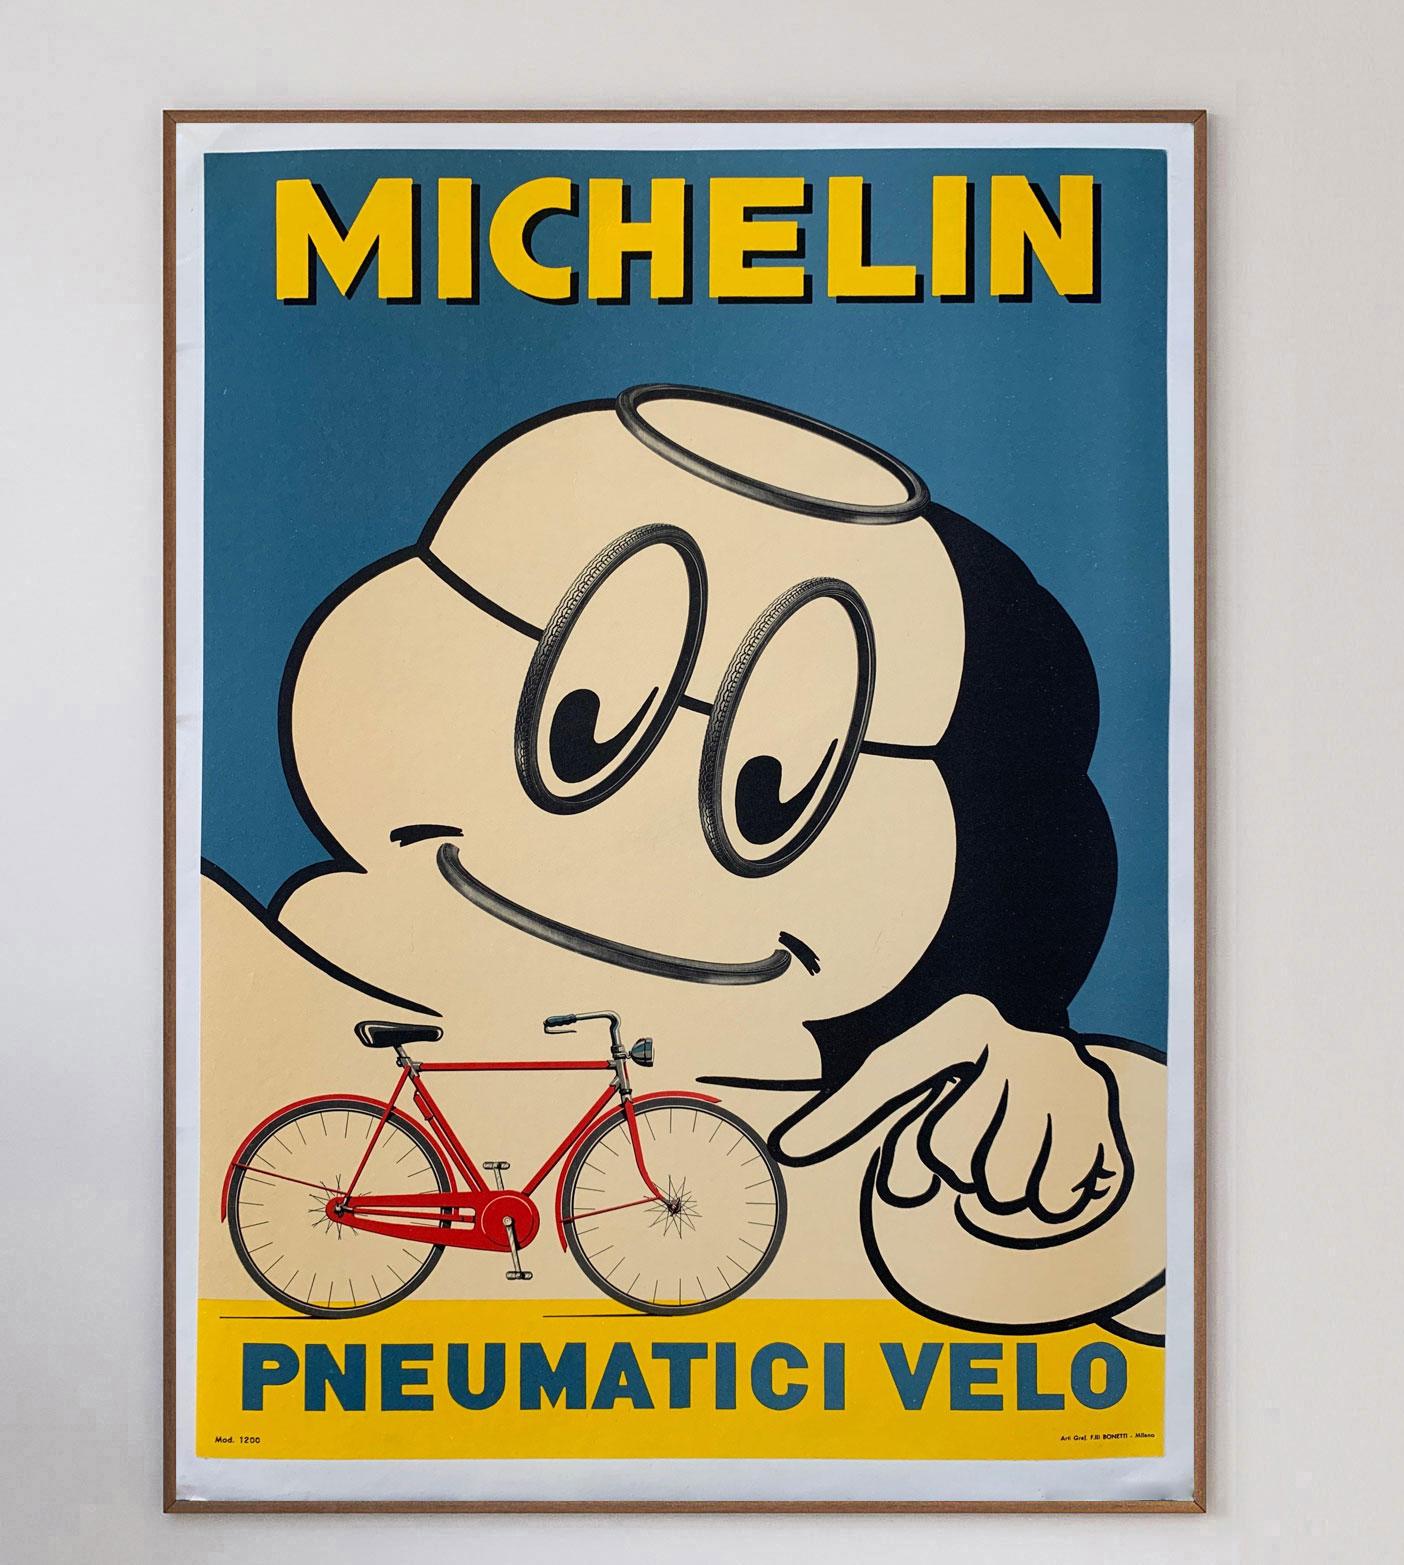 Dieses wunderbare, von Verga Printers Milano gedruckte Werbeplakat für Michelin-Reifen stammt aus dem Jahr 1959 und zeigt das Michelin-Maskottchen Bibendum, auch bekannt als Michelin-Männchen, das ein Fahrrad der damaligen Zeit schiebt, darunter die